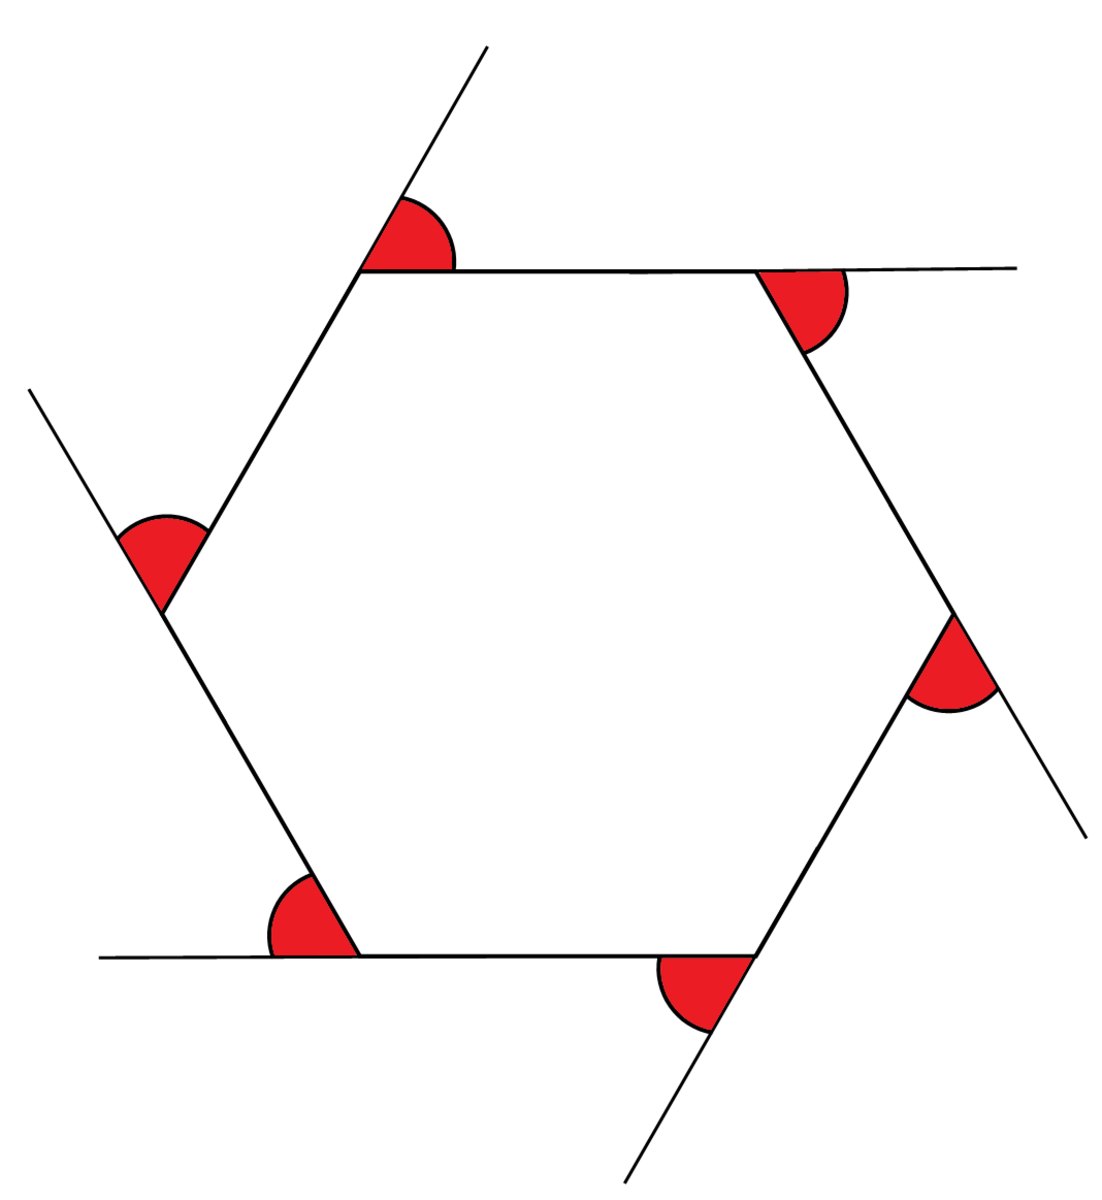 Exterior angles of a hexagon